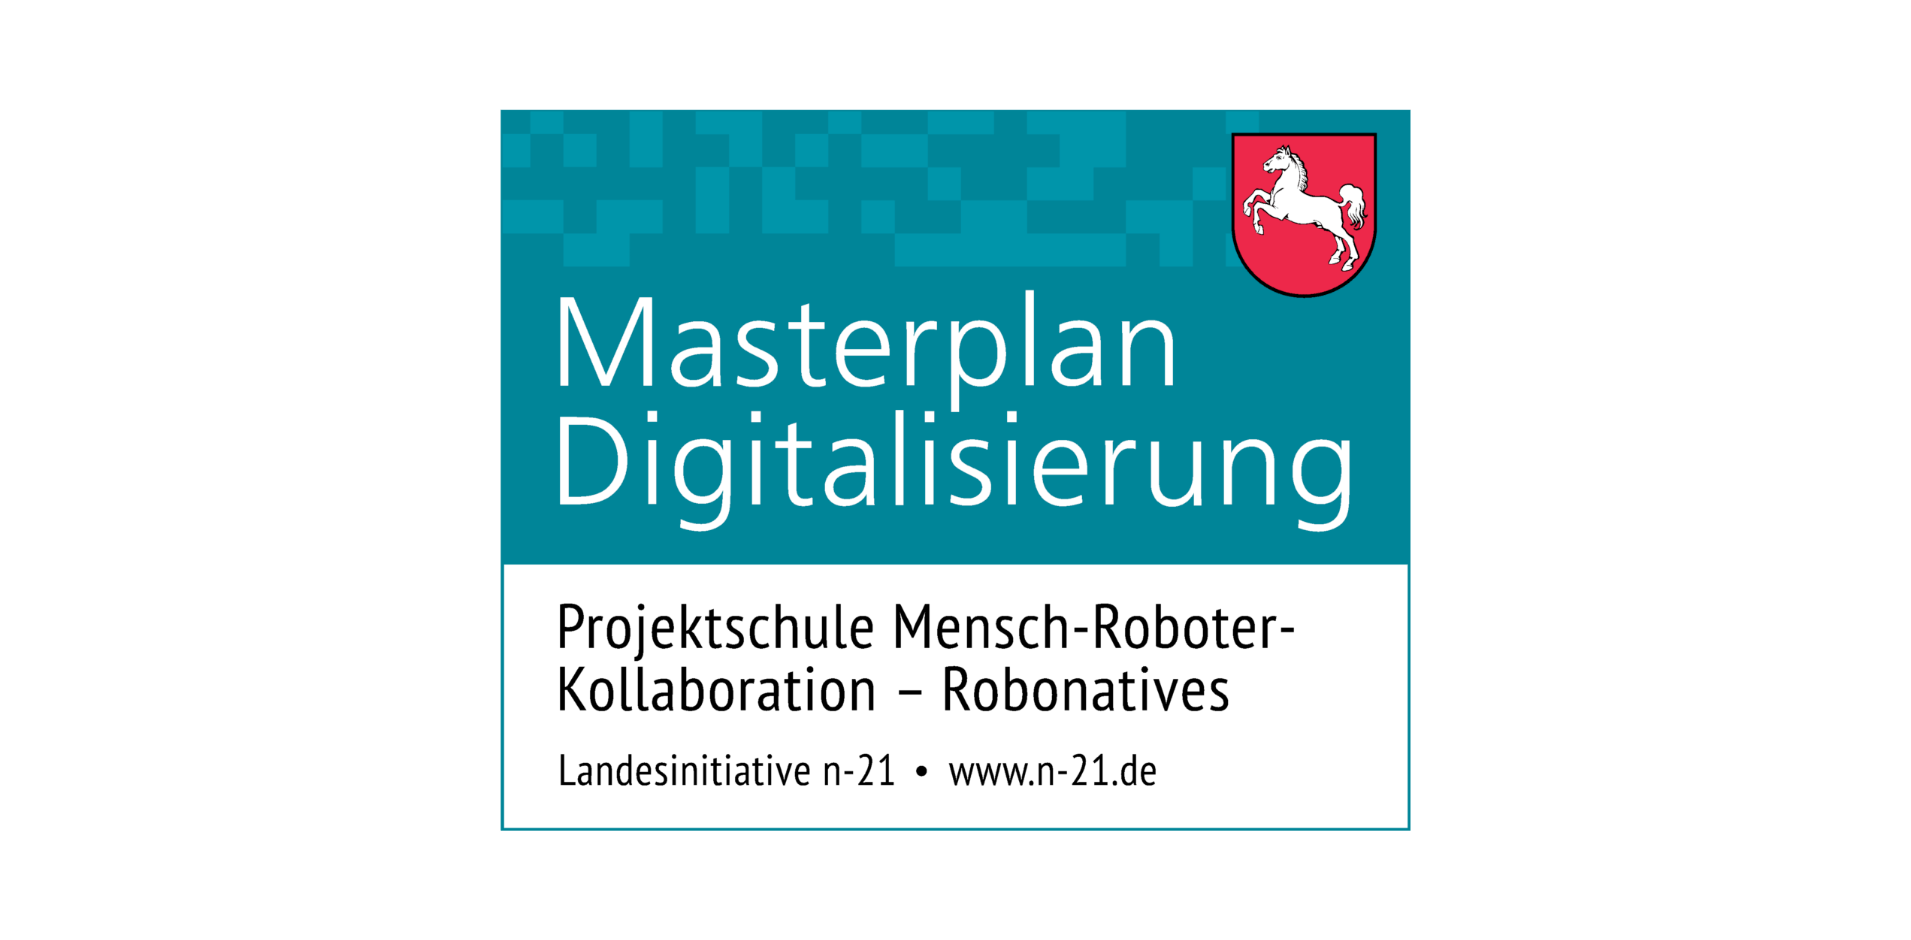 Masterplan Digitalisierung Robonatives